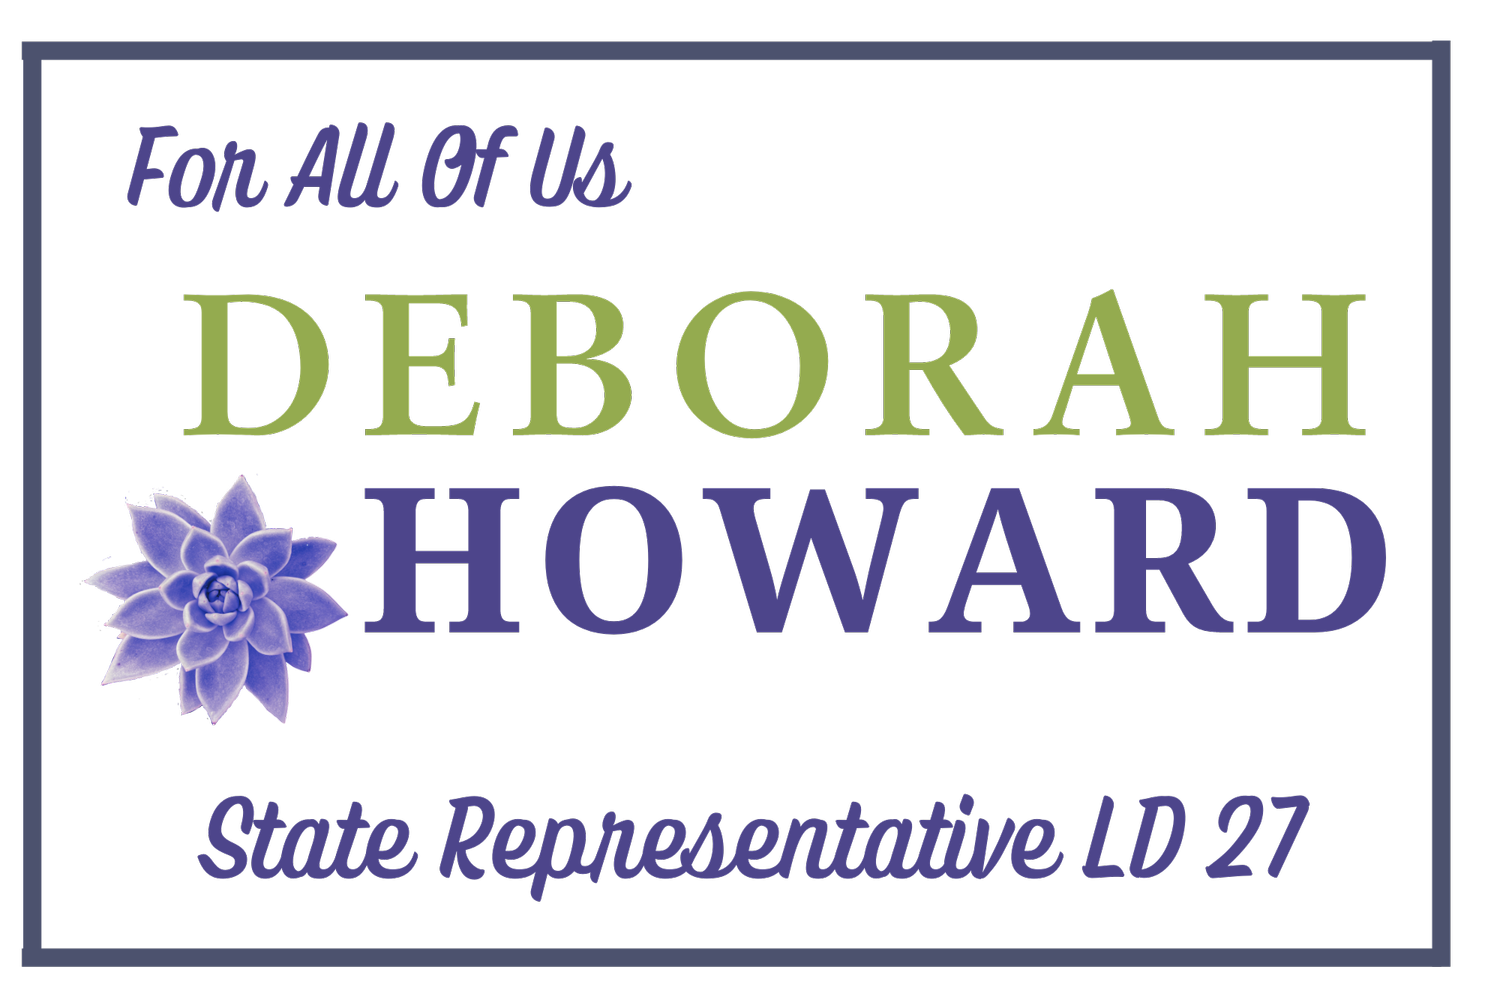 Deborah Howard LD 27